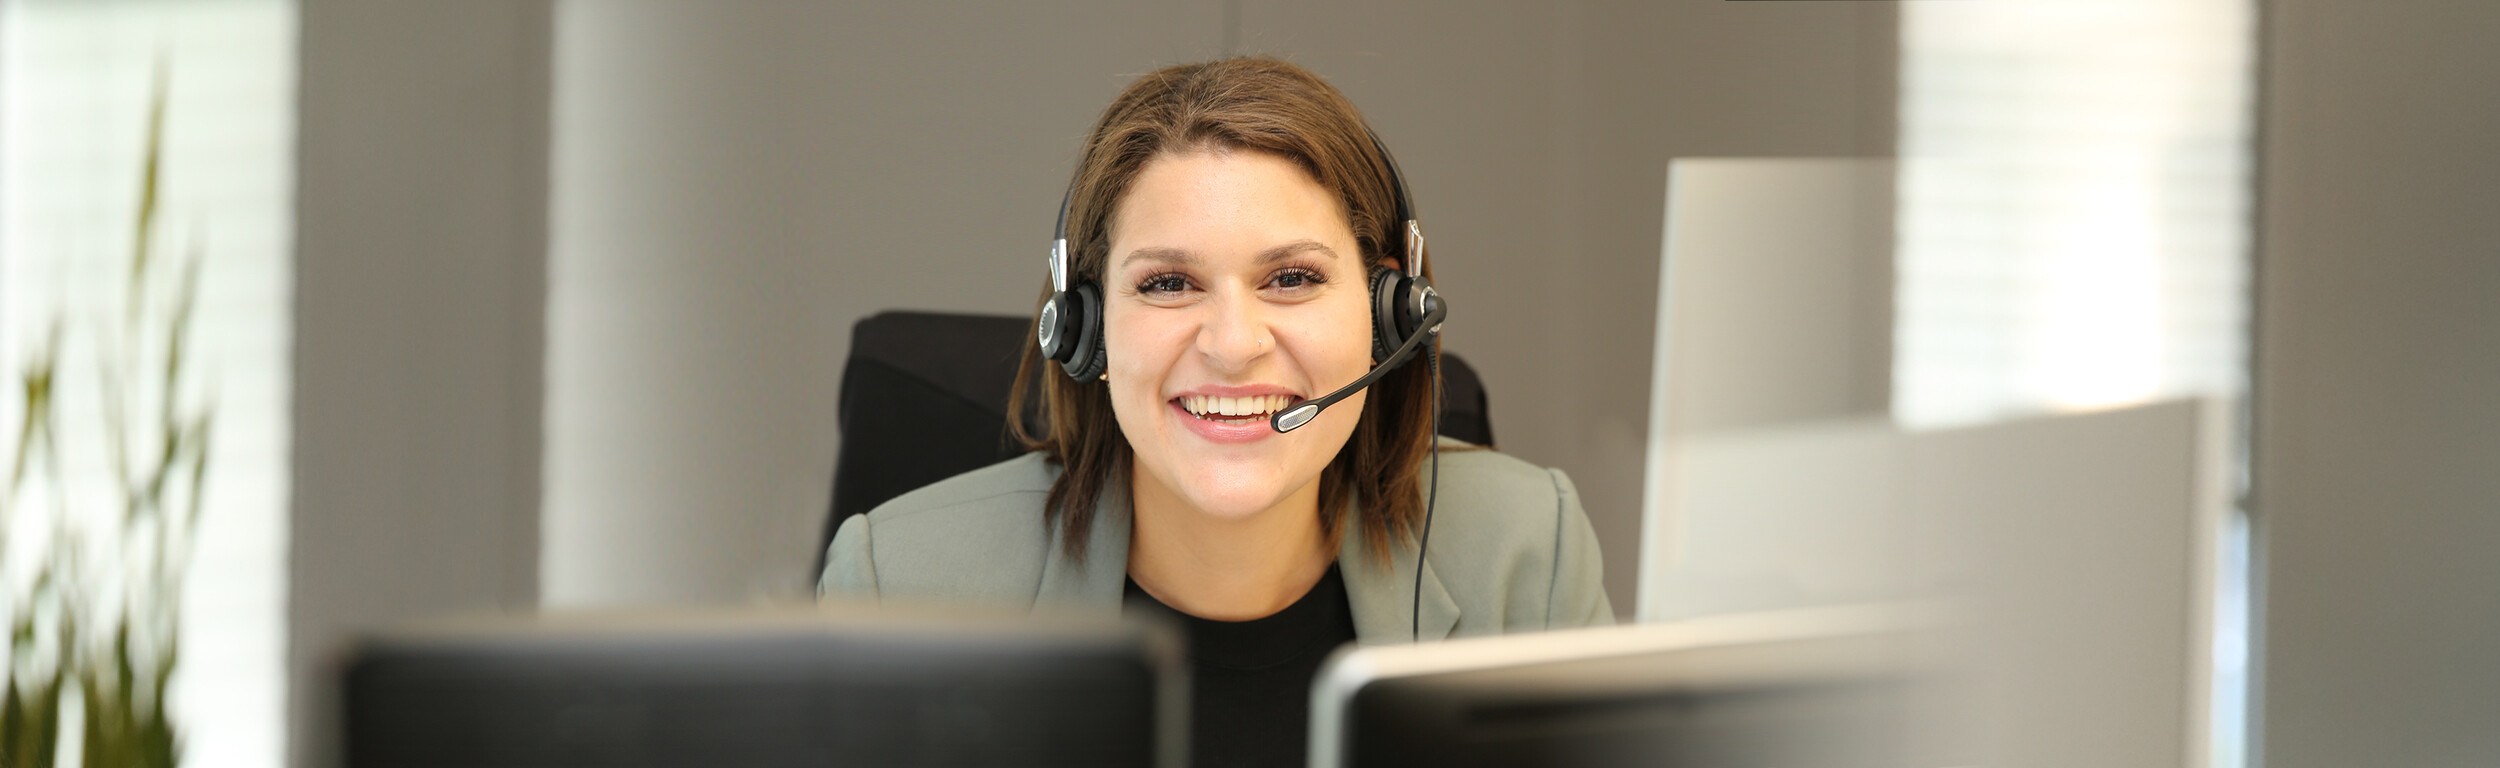 Frau mit einem Headset sitzt lächelnd vor einem Computer.